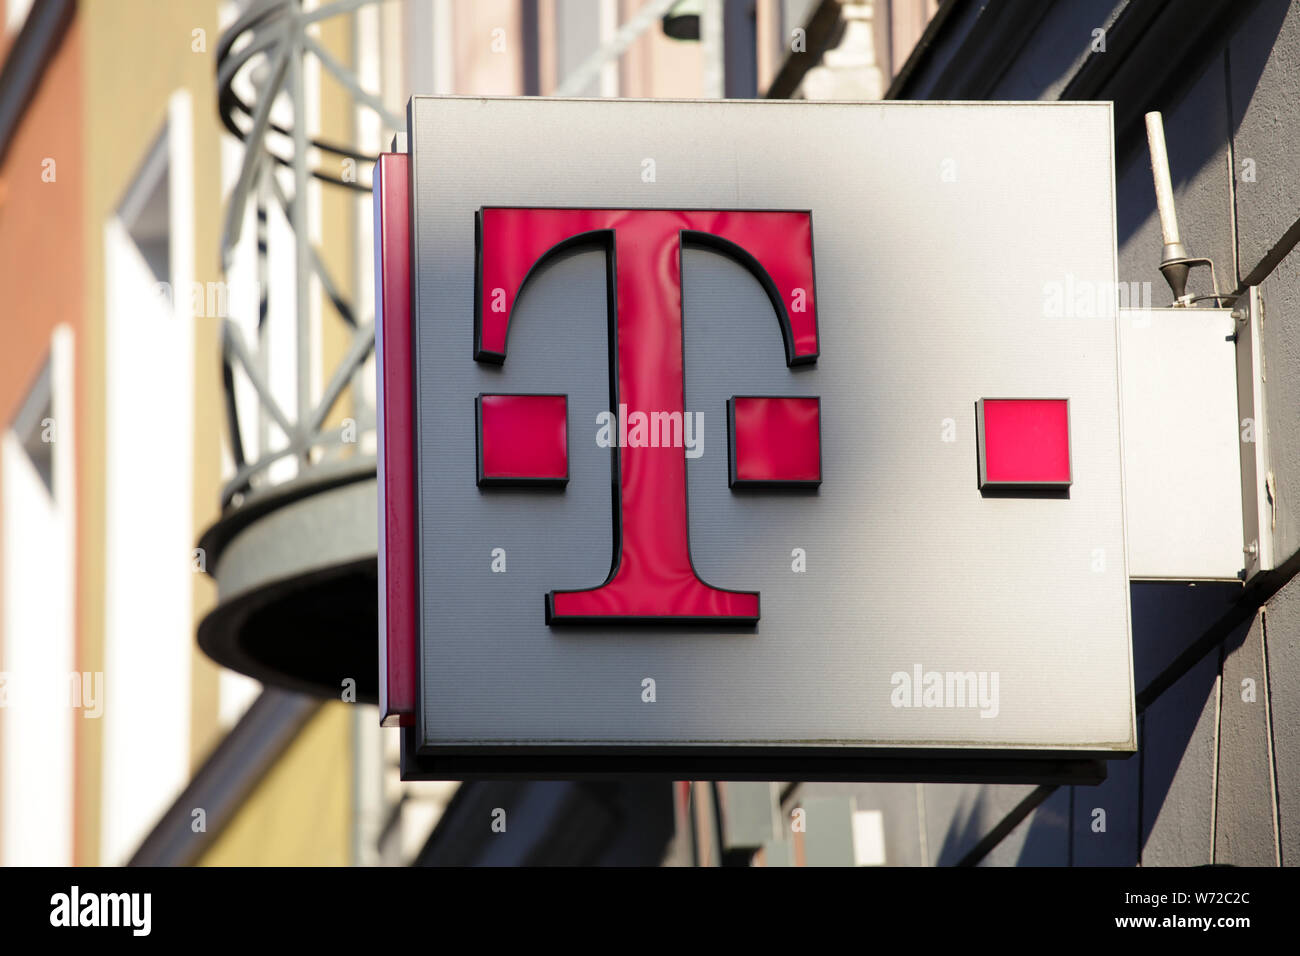 Deutsche Telekom calle signo arriba tienda de teléfonos Foto de stock